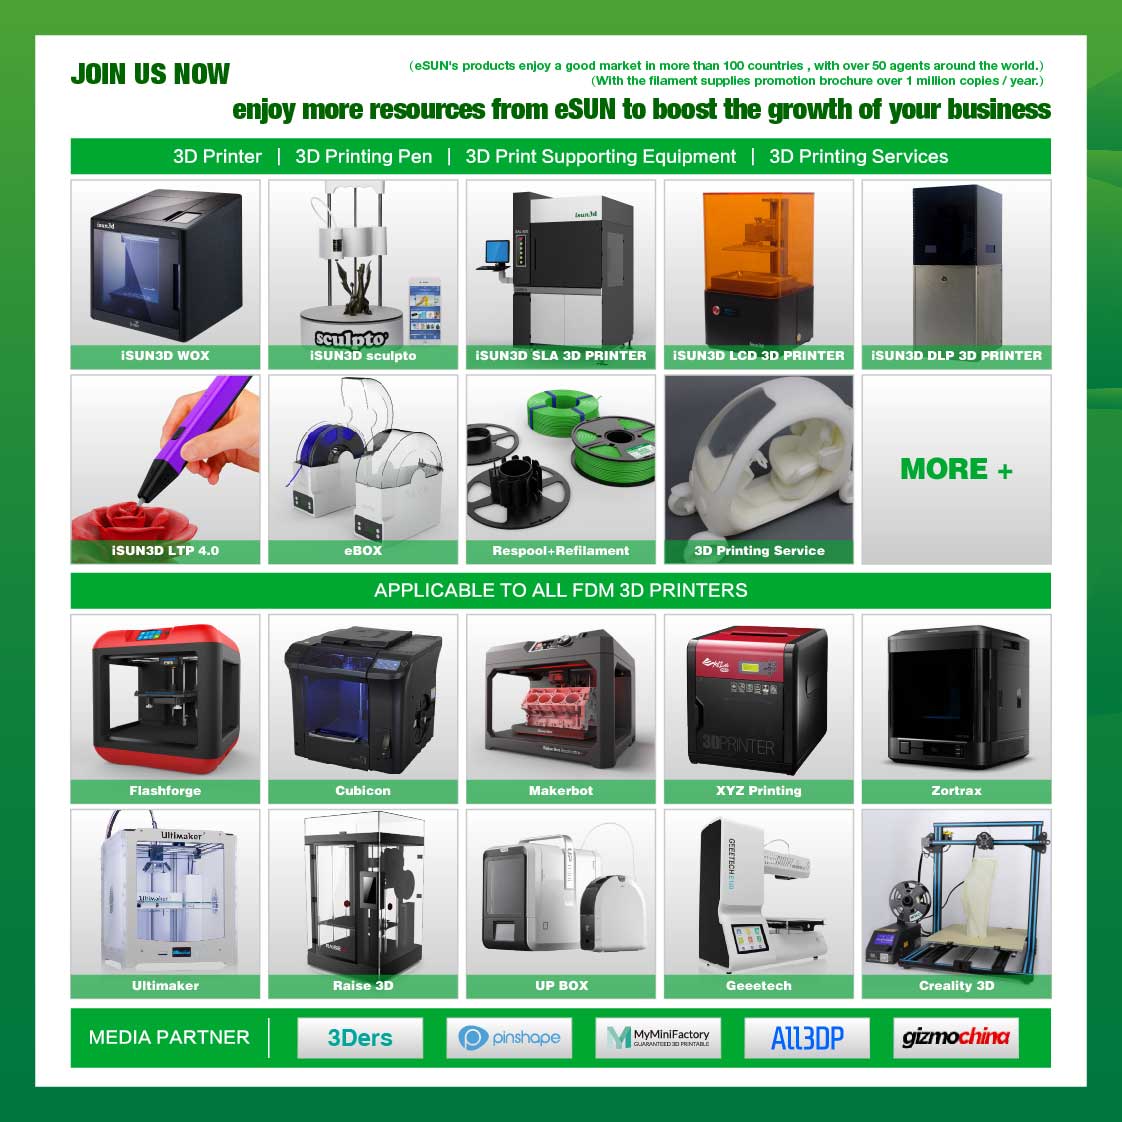 eSUN Green Color 3d Printer Filament PLA+ 1.75mm - 1kg/Roll